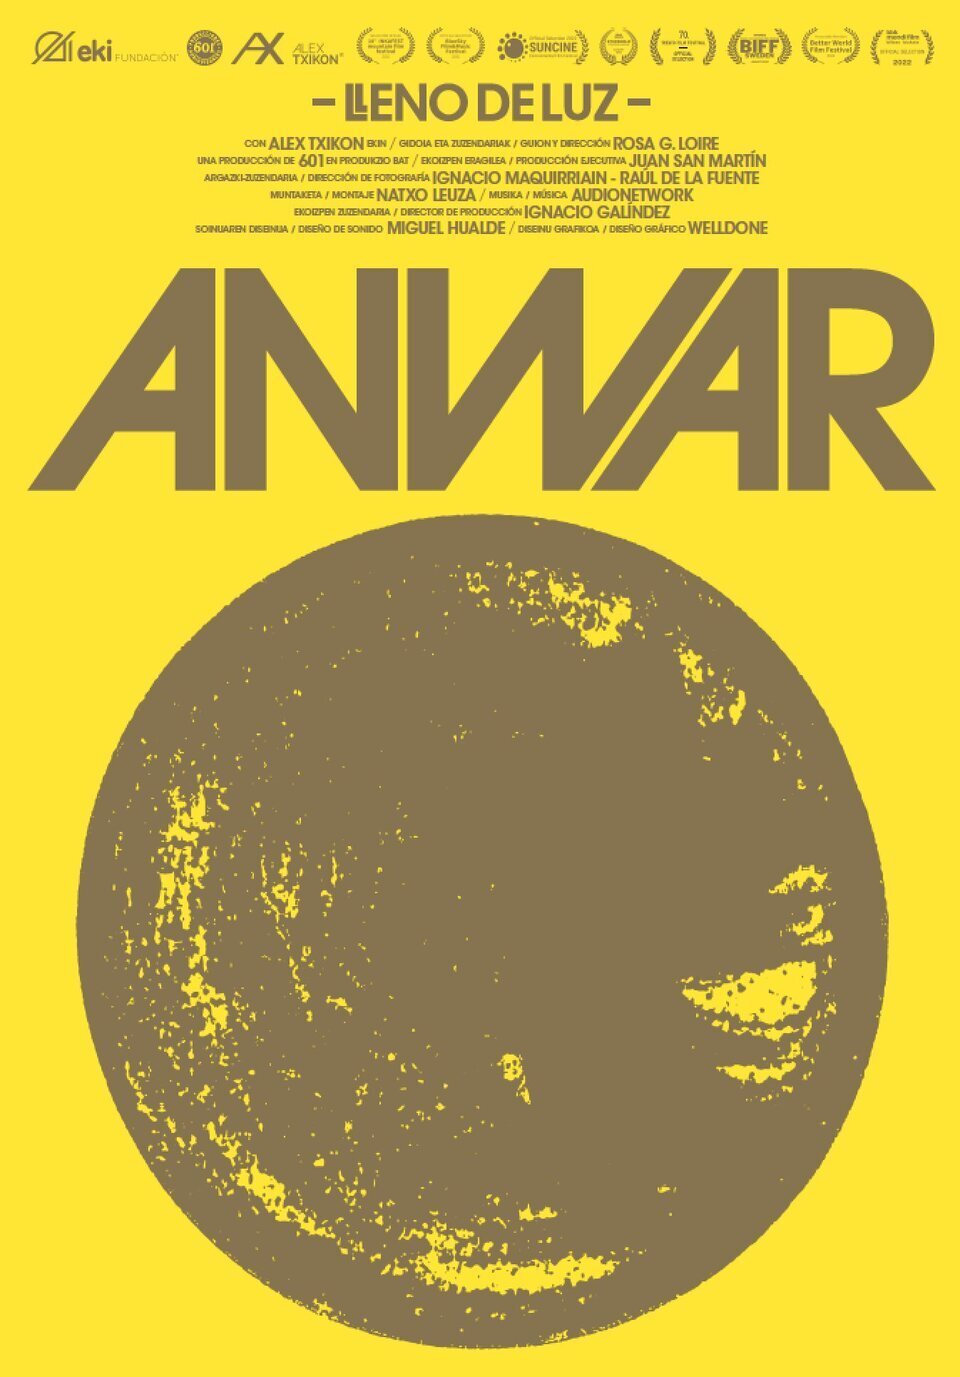 Cartel de Anwar (Lleno de luz) - Anwar (Lleno de luz)